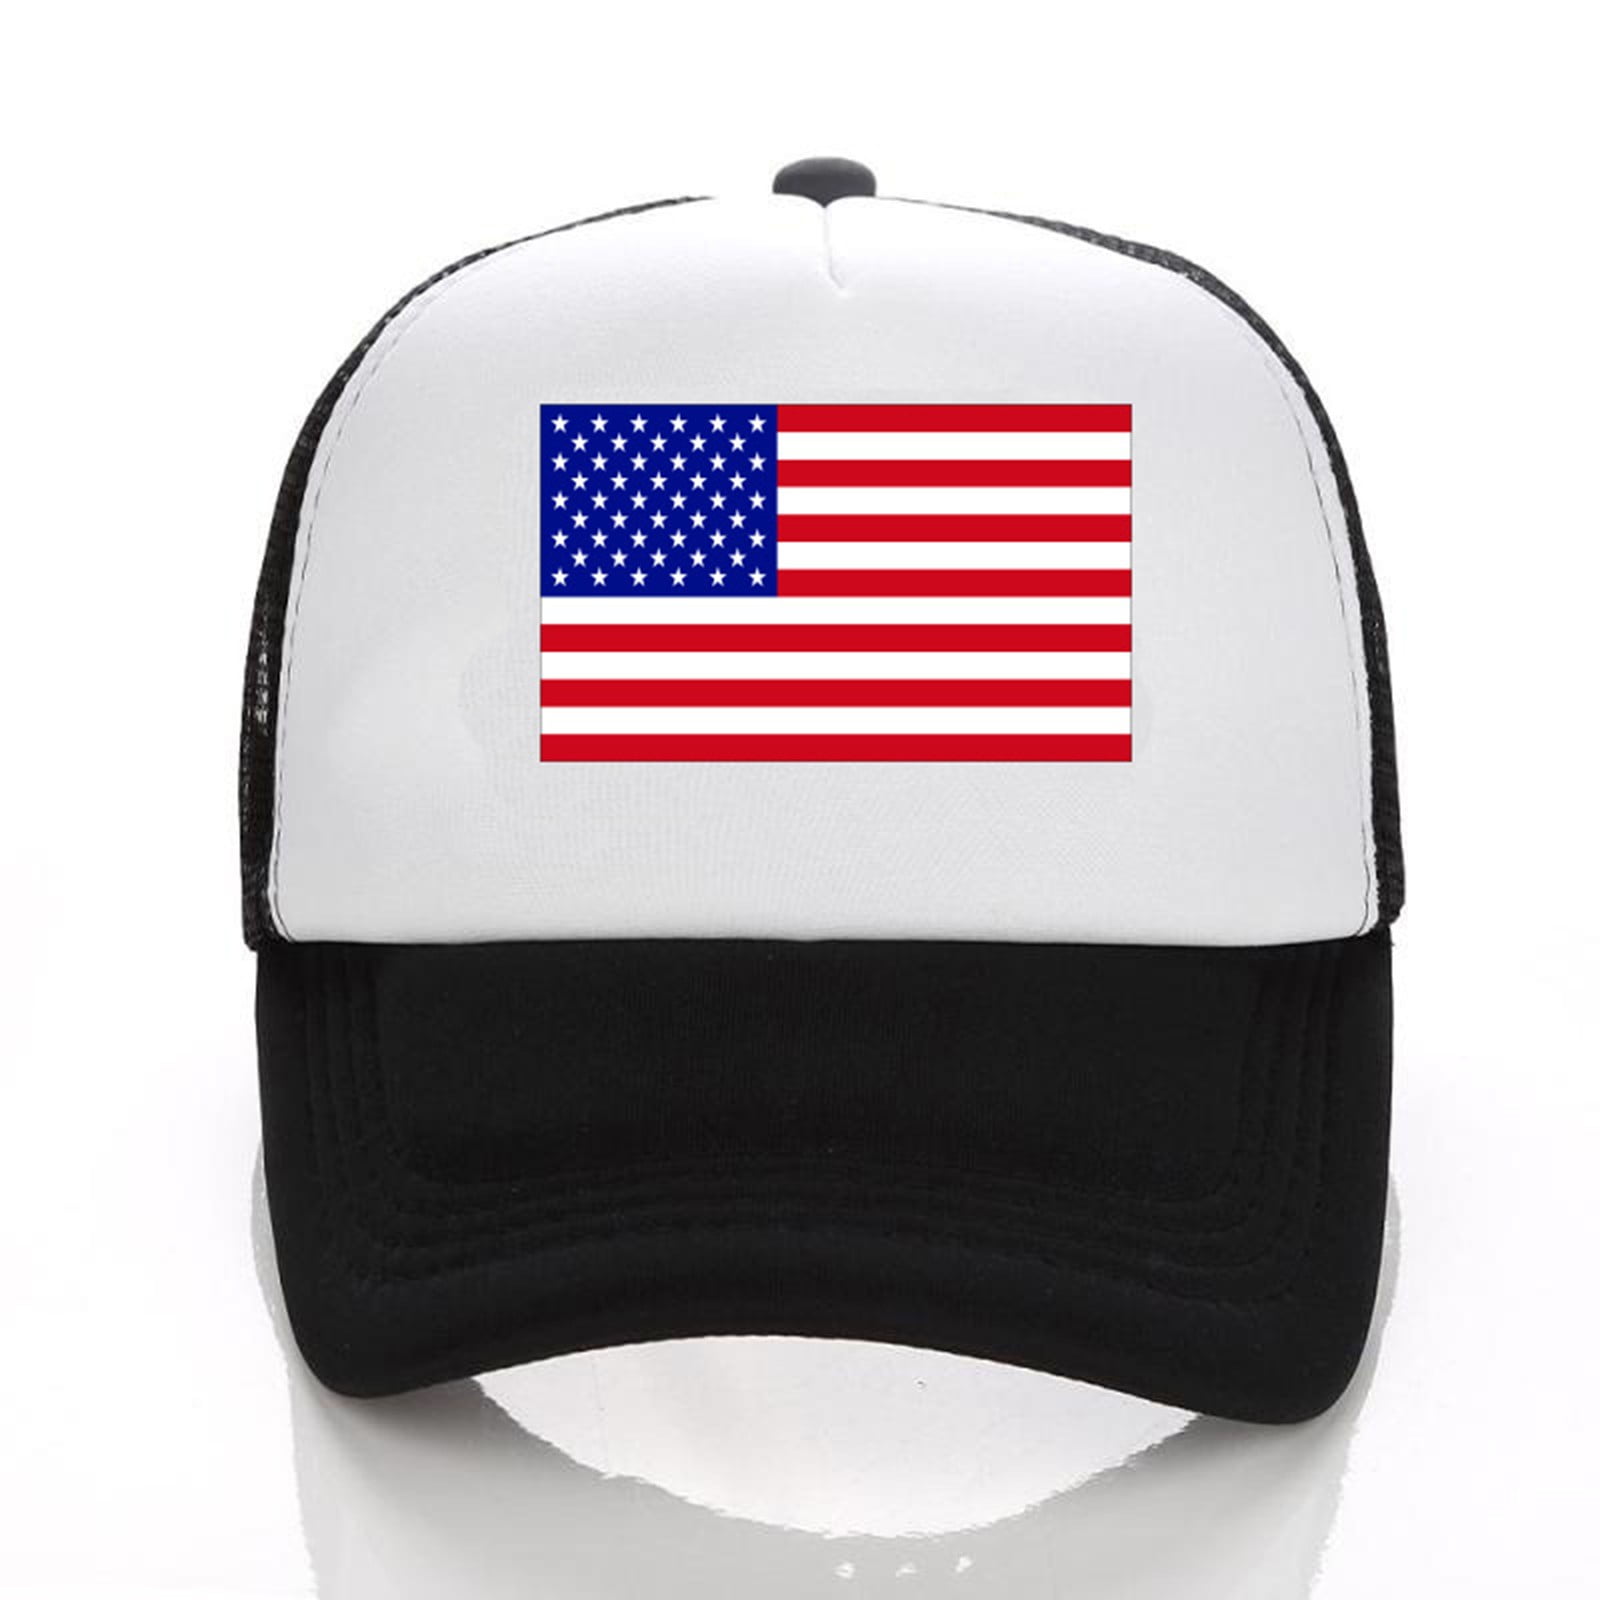 mnjin baseball caps unisex america baseball cap united states mesh splice  hat for men women usa flag adjustable hat size strapback breathable trucker